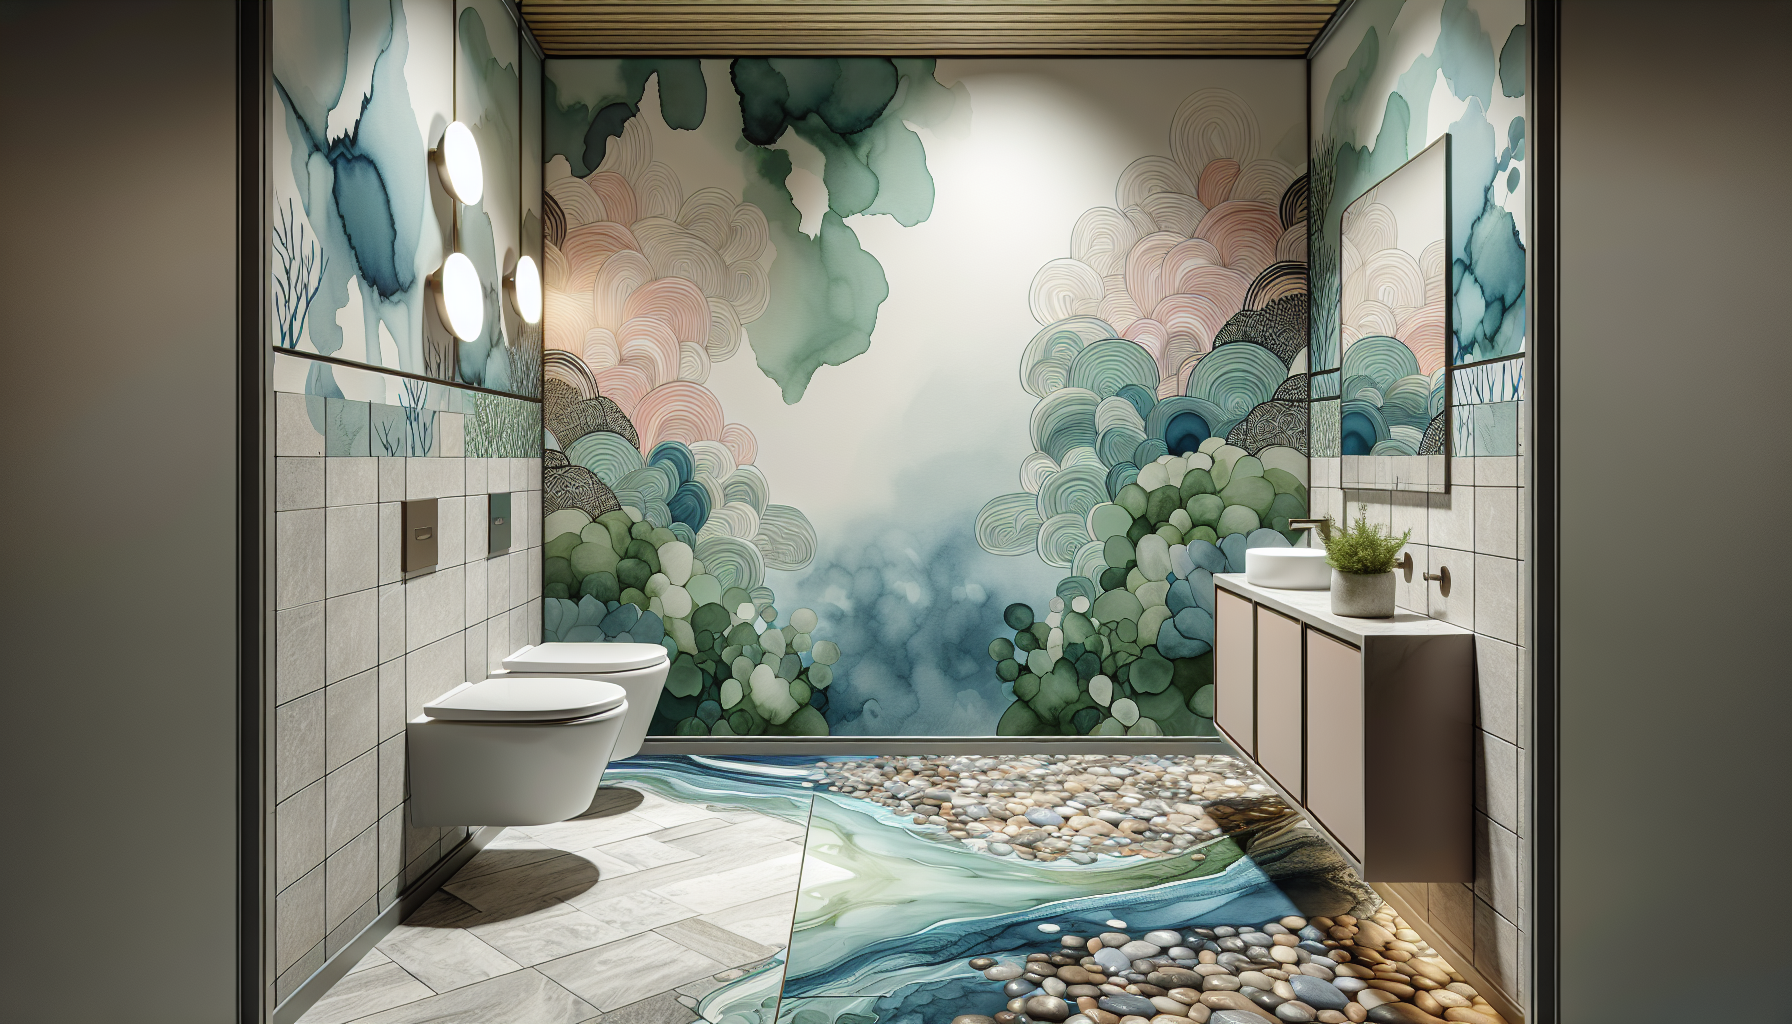 Wand- und Bodengestaltung. Ein kreatives Designkonzept für die Wand- und Bodengestaltung im Gäste-WC mit harmonischen Farben und Materialien.